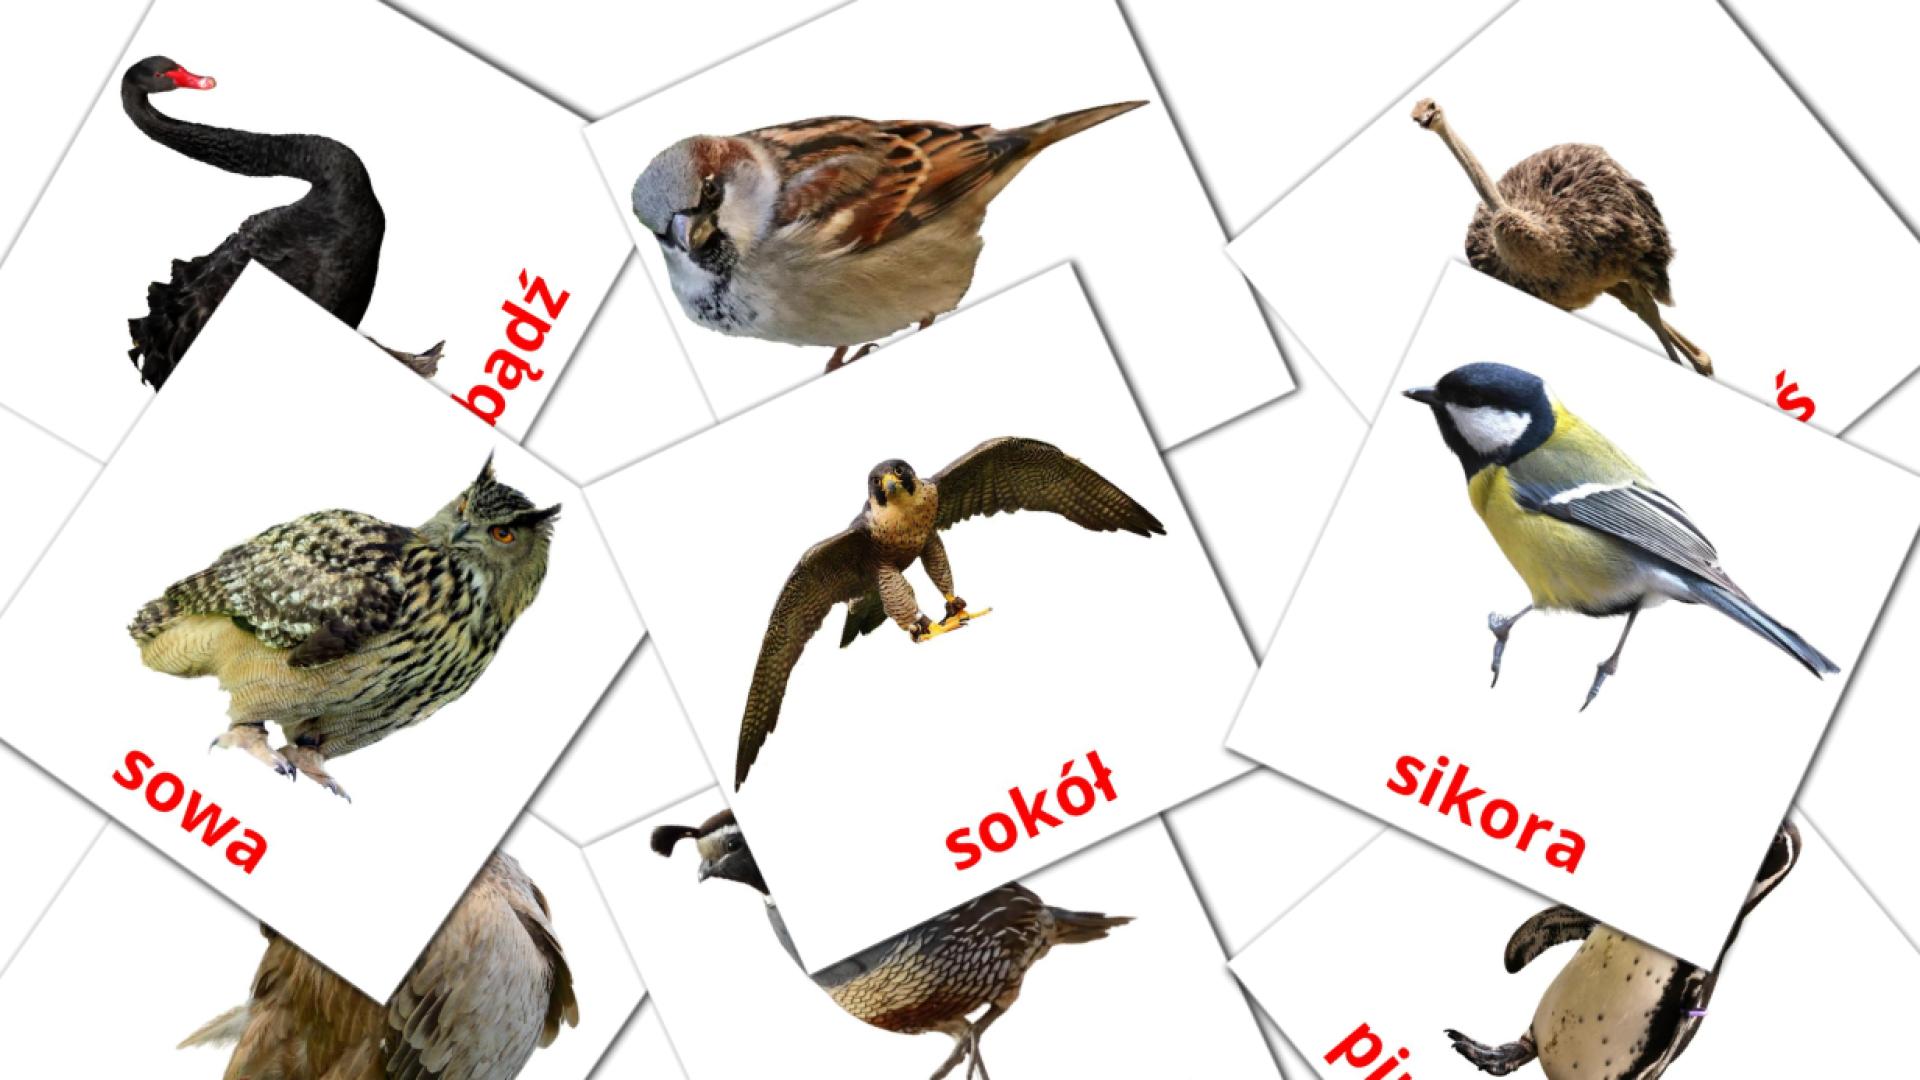 Ptaki polish vocabulary flashcards